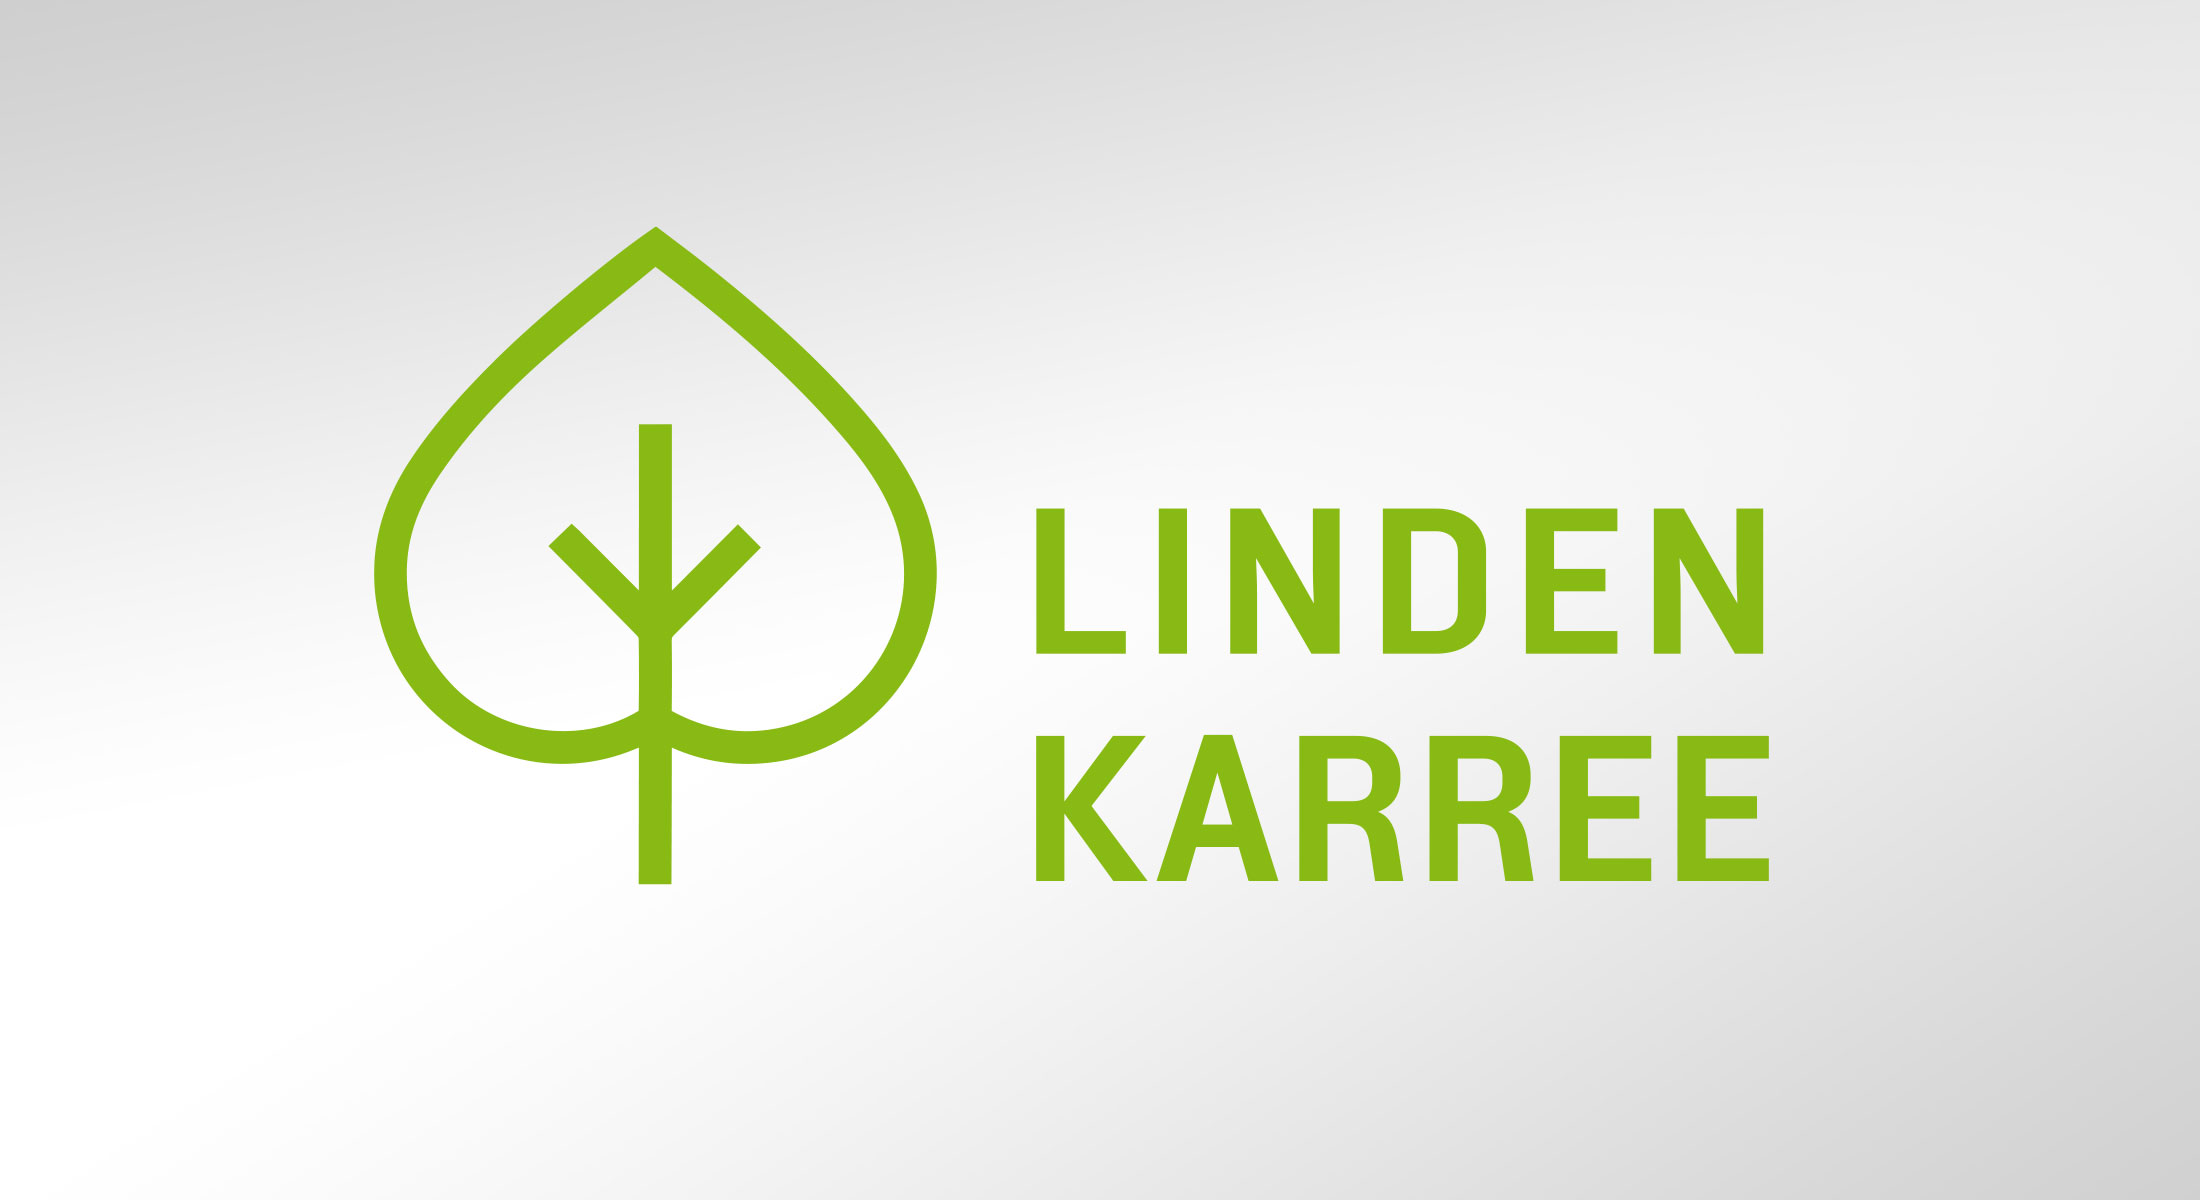 Lindenkarree Logo Image